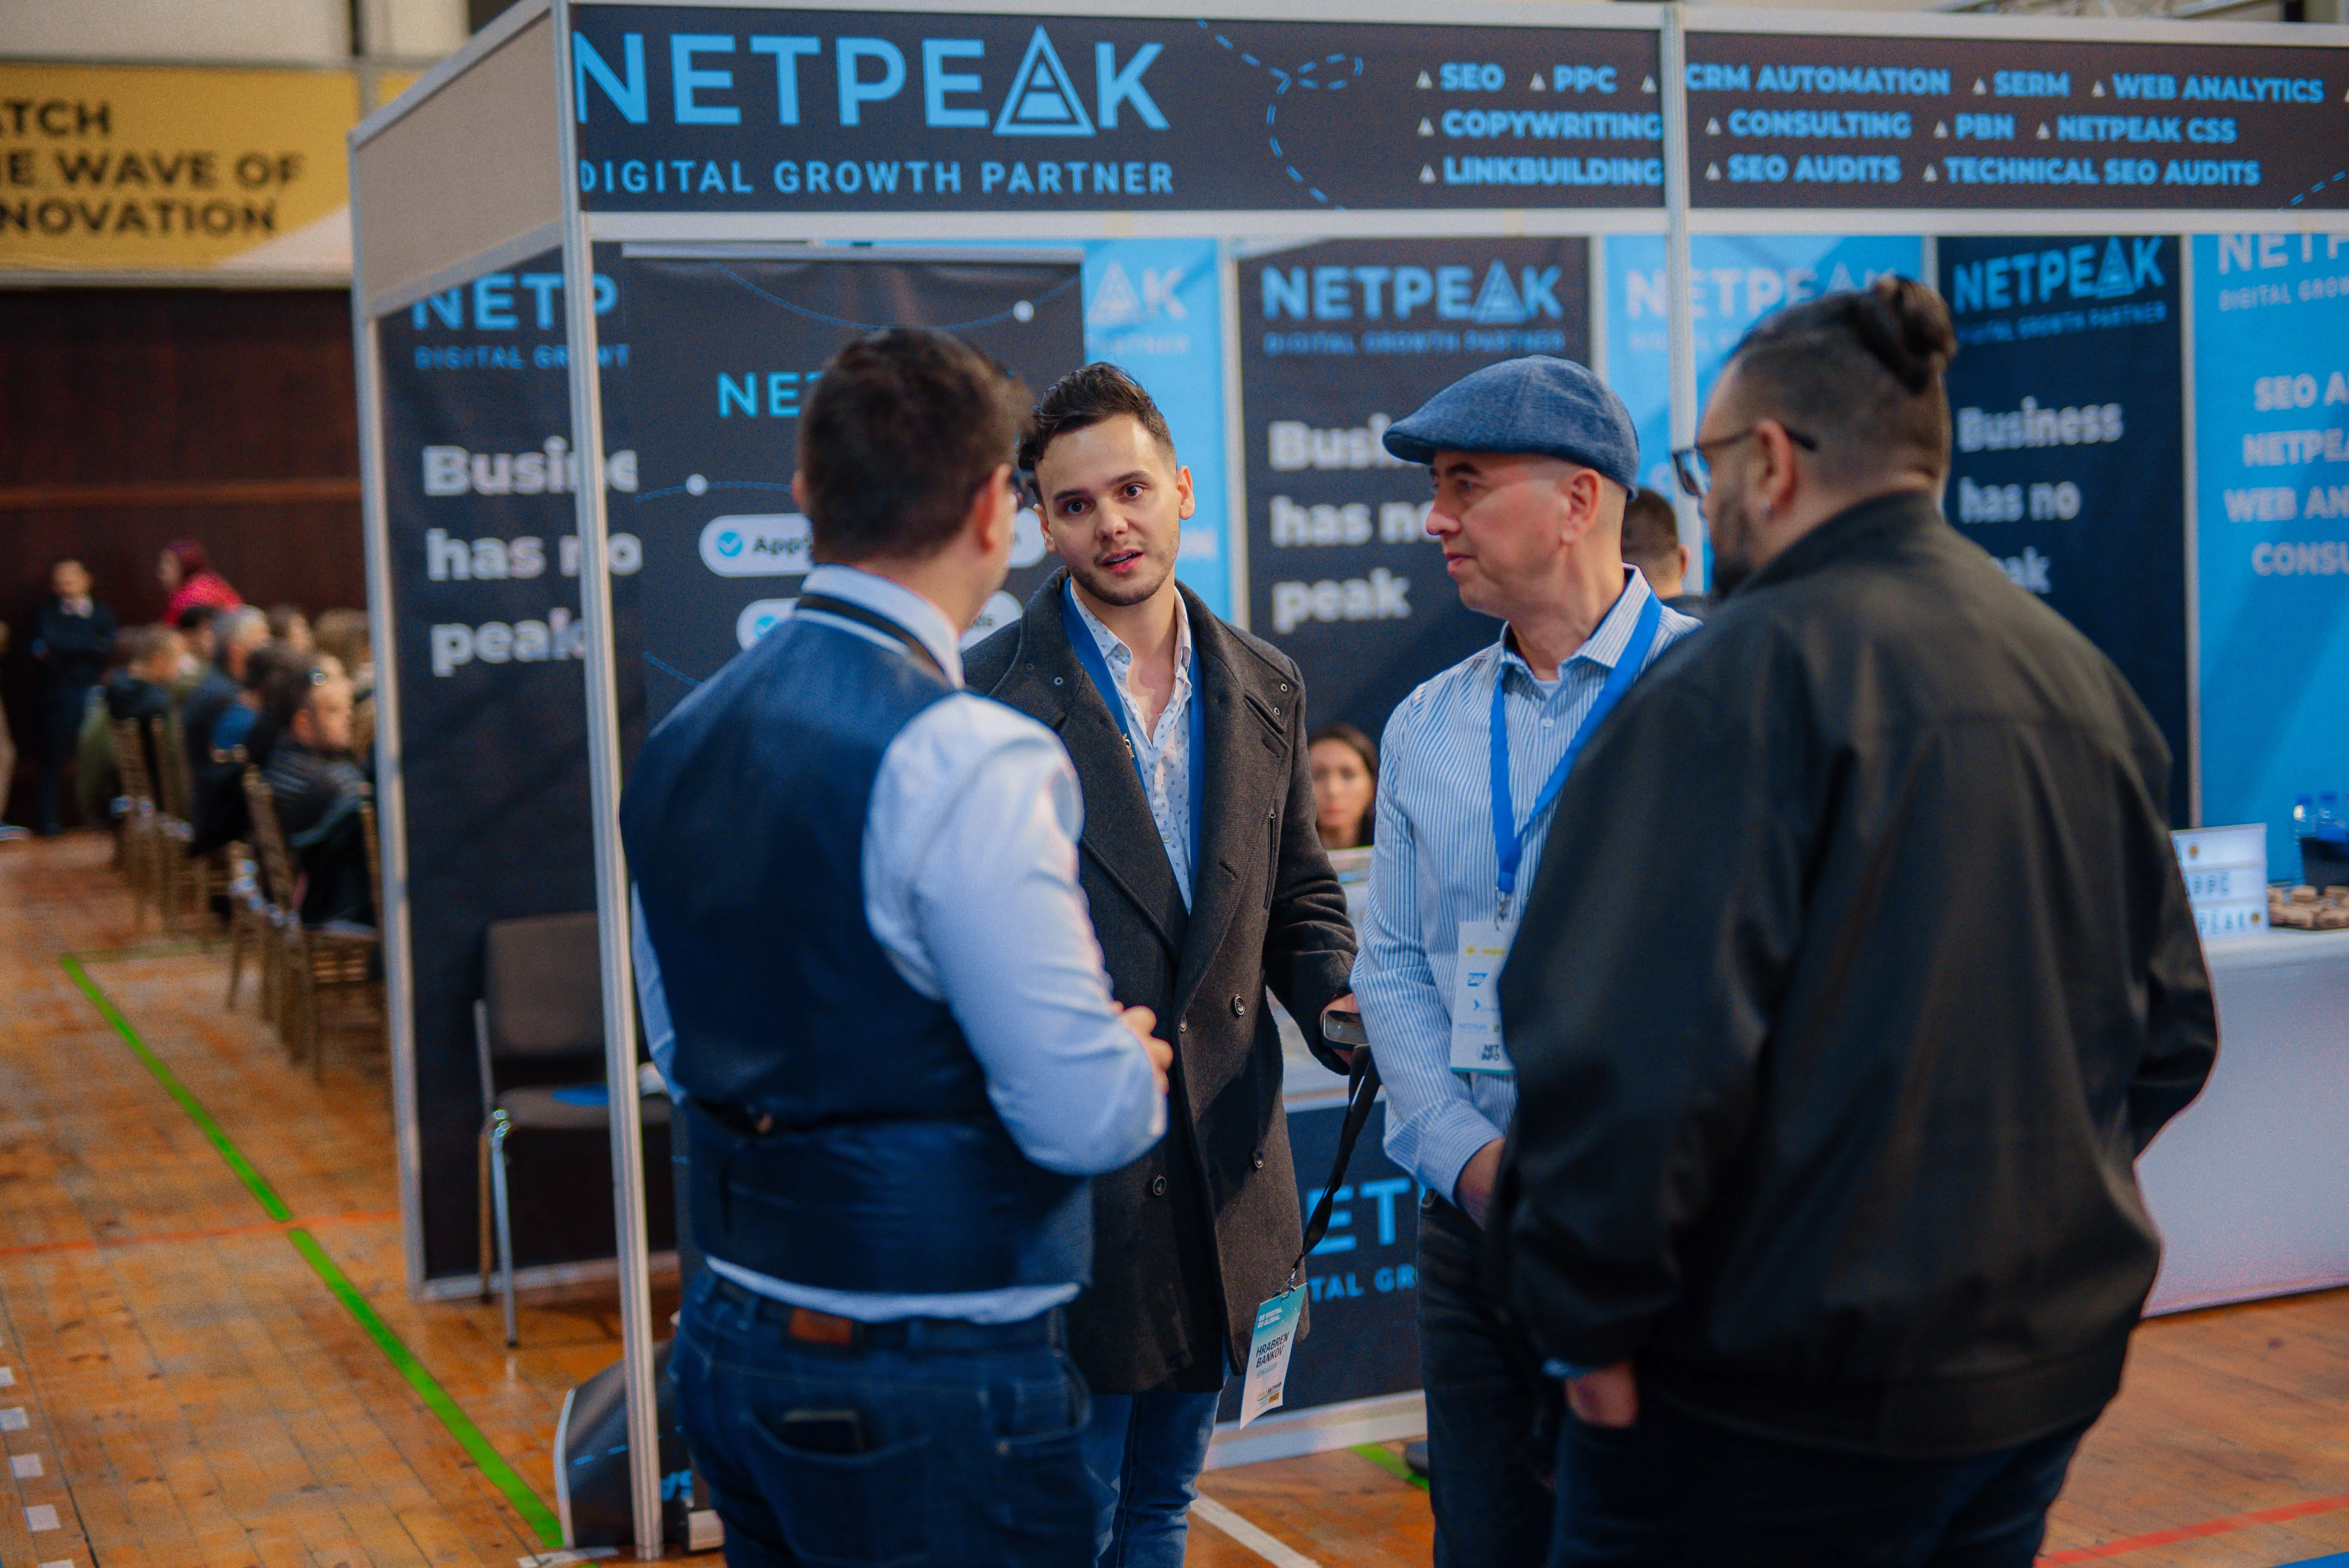 Netpeak Bulgaria и Ringostat Bulgaria имаха щандове в експо зоната, които бяха посетени от редица бизнеси в областта на технологиите, хостинг решенията, fintech индустрията, имотите, ресторантьорството, ecommerce и други